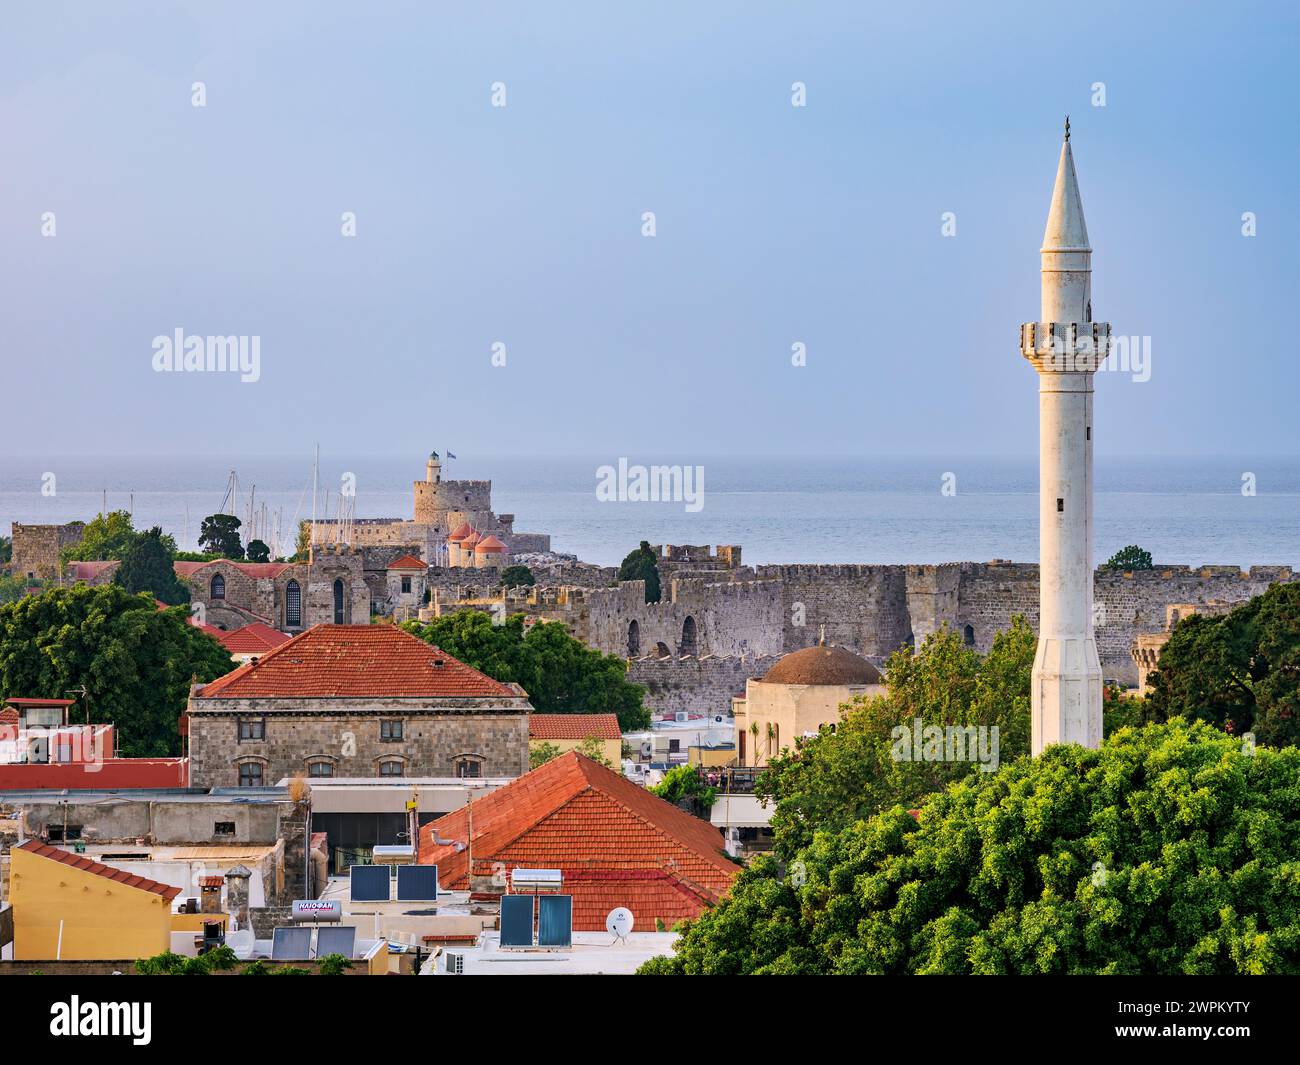 Vue sur le minaret de la mosquée Ibrahim Pacha et la vieille ville médiévale vers la forteresse Saint-Nicolas, Rhodes City, Rhodes Island, Dodécanèse, îles grecques Banque D'Images